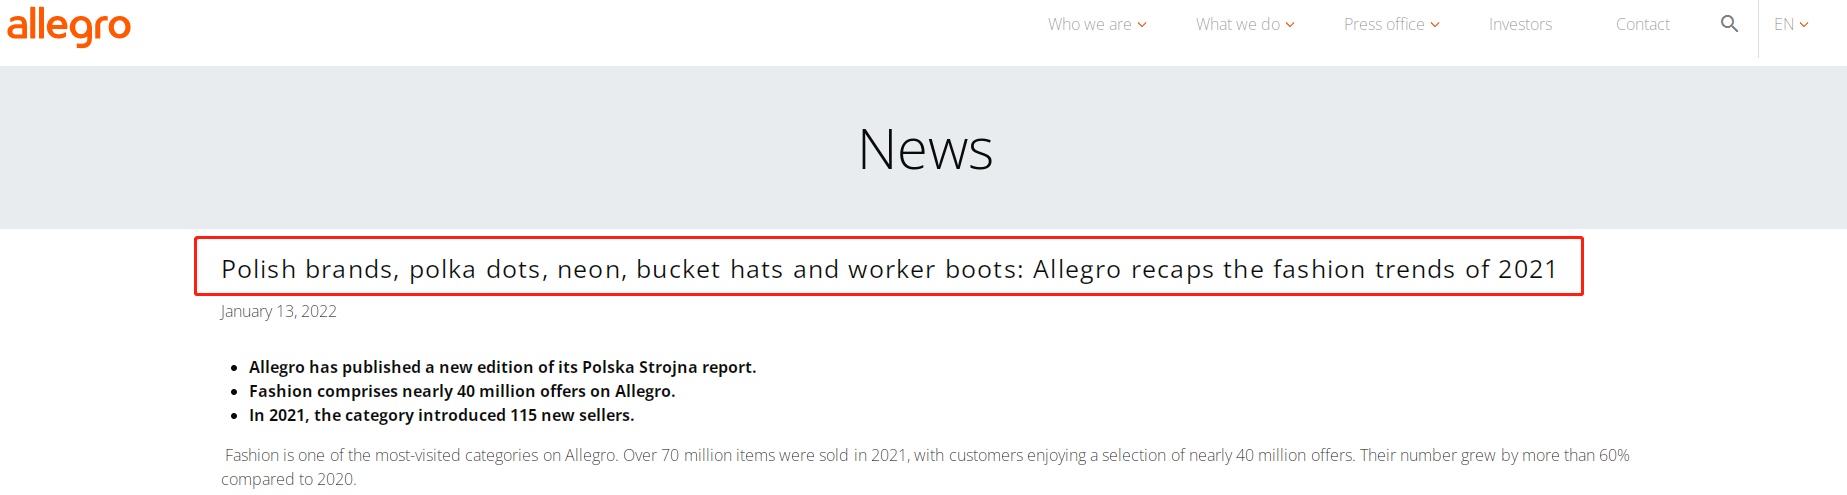 2021年Allegro销售7000多万件时尚用品 同比增超60%